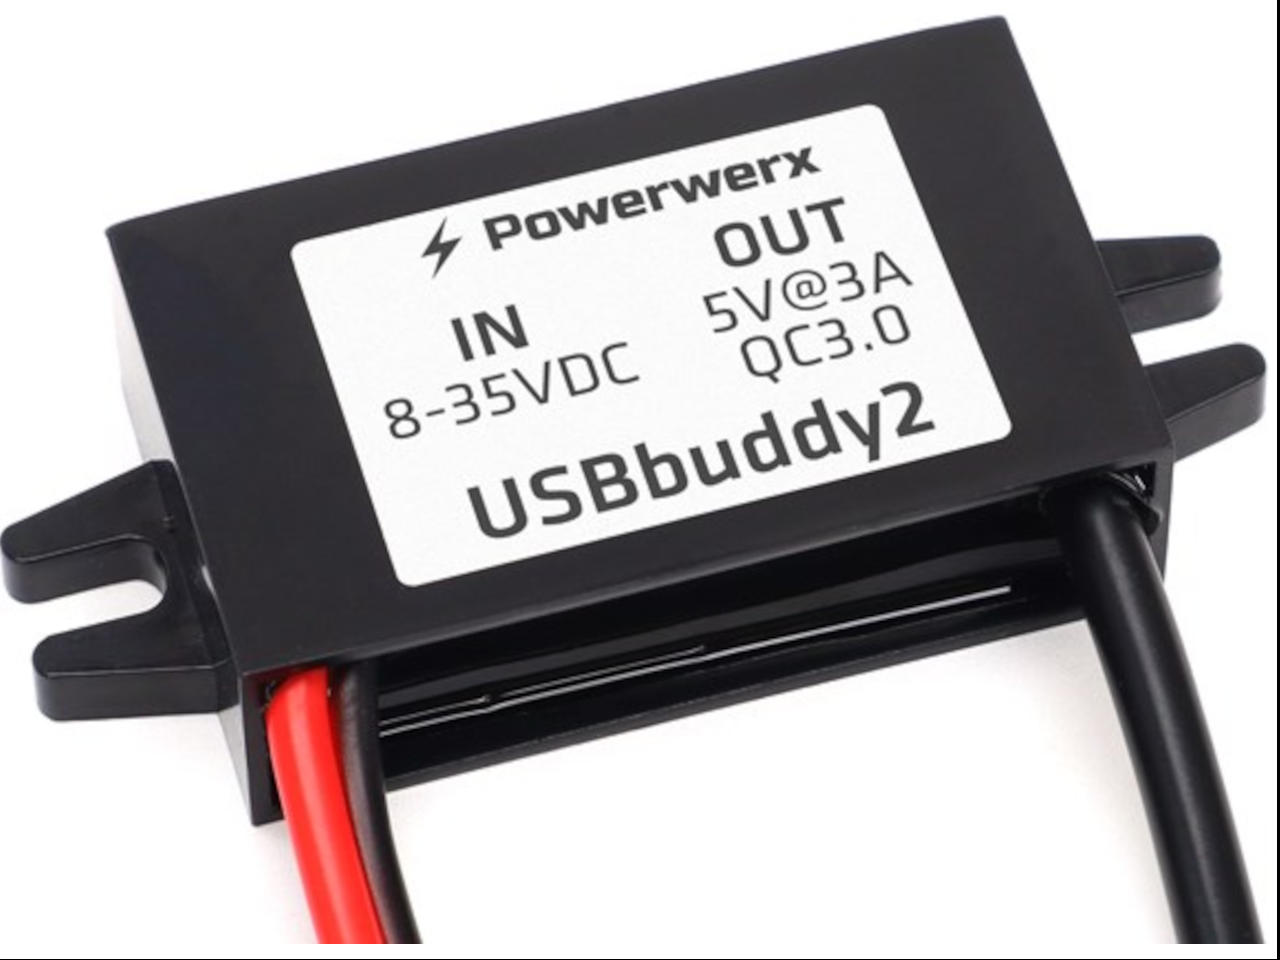 Powerwerx-USBbuddy2-Image-2